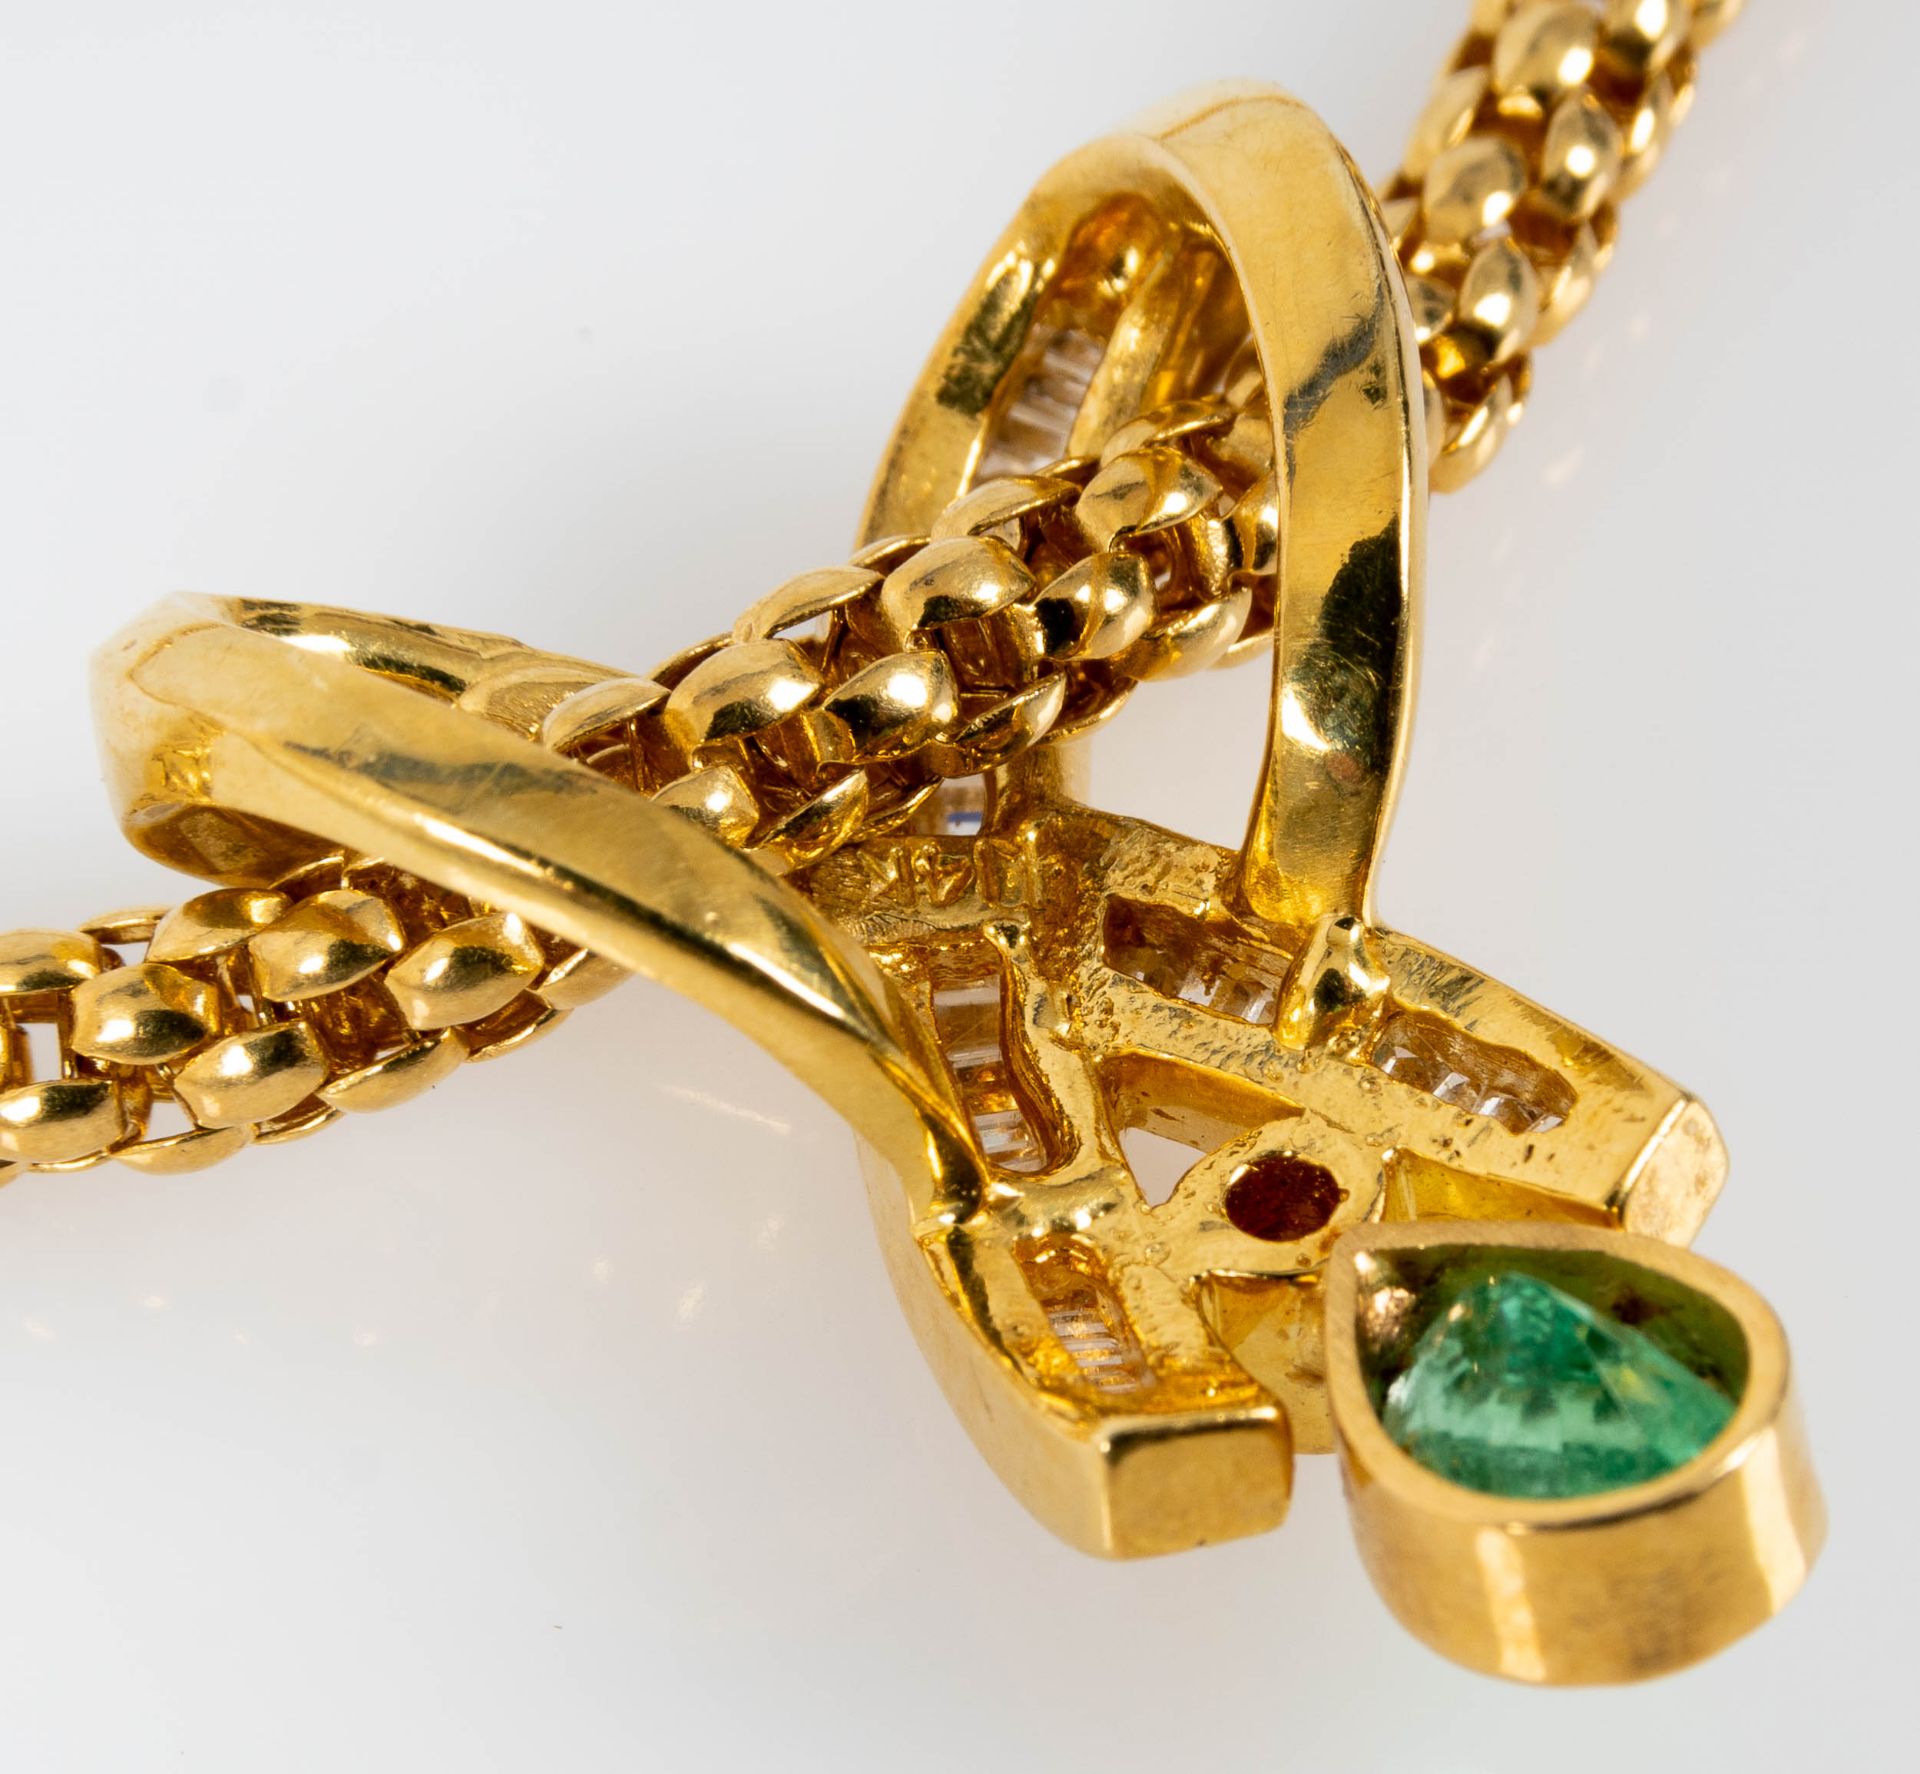 Prächtiges Smaragd-Brillant-Collier, bewegliche, ca. 46 cm lange tauförmige Halskette mit einer Bre - Bild 8 aus 10